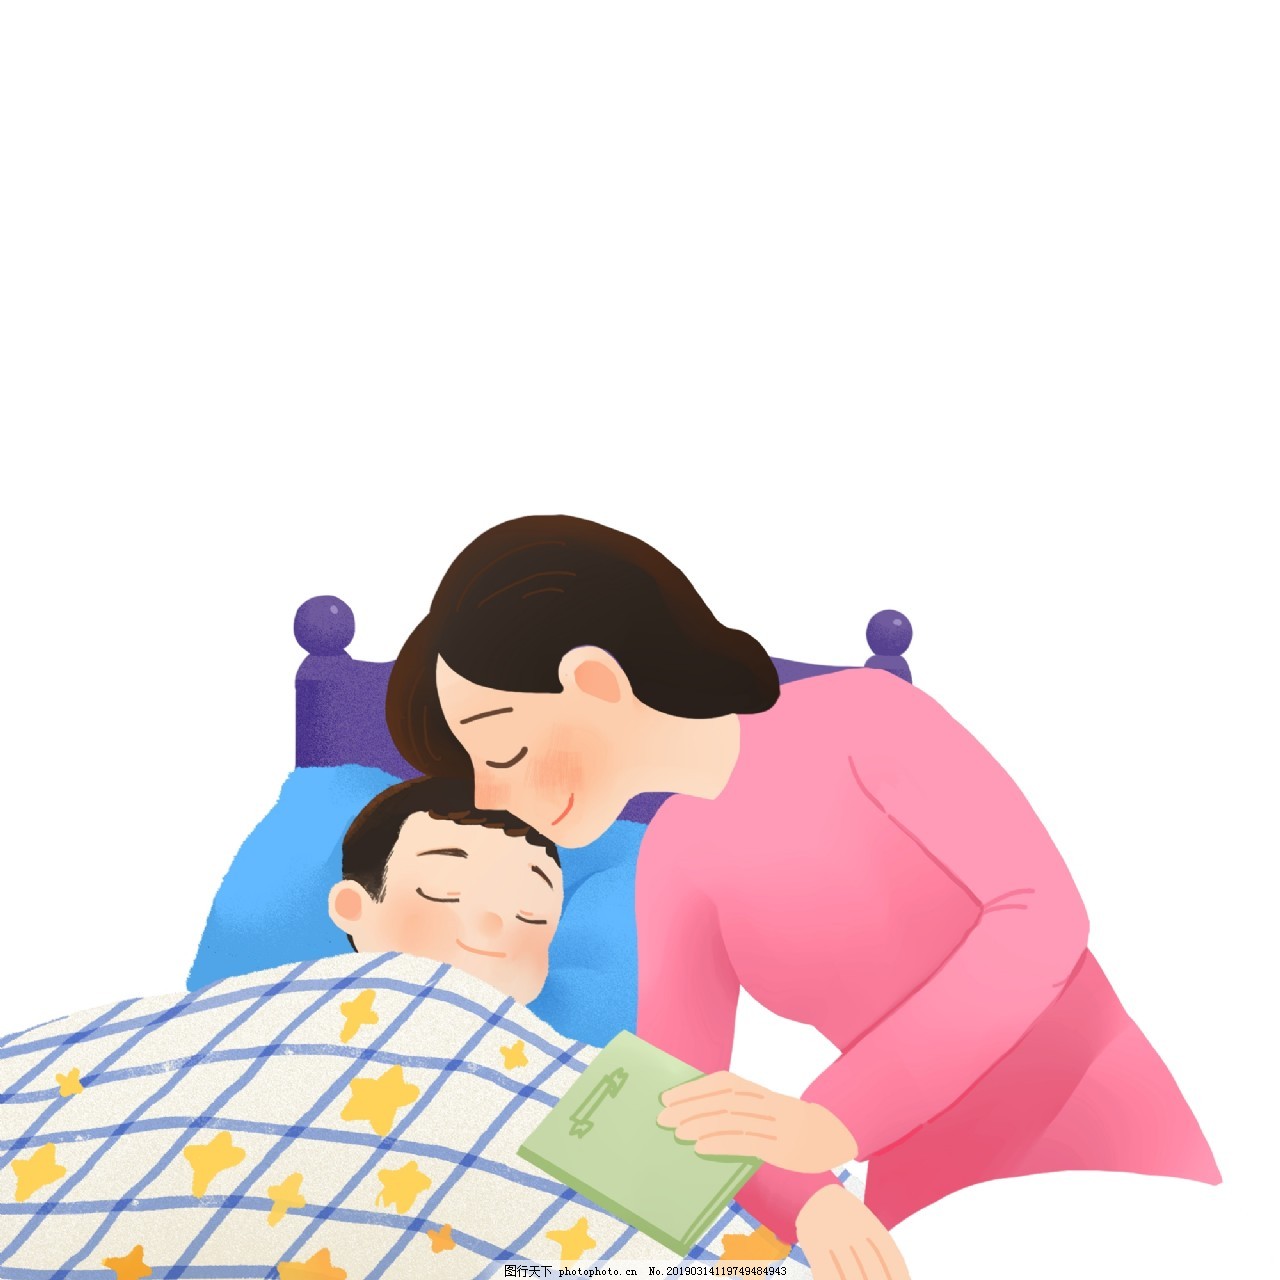 心理学家：孩子摸着妈妈睡不是“怪癖”，而是在表达“另类饥饿”_儿子